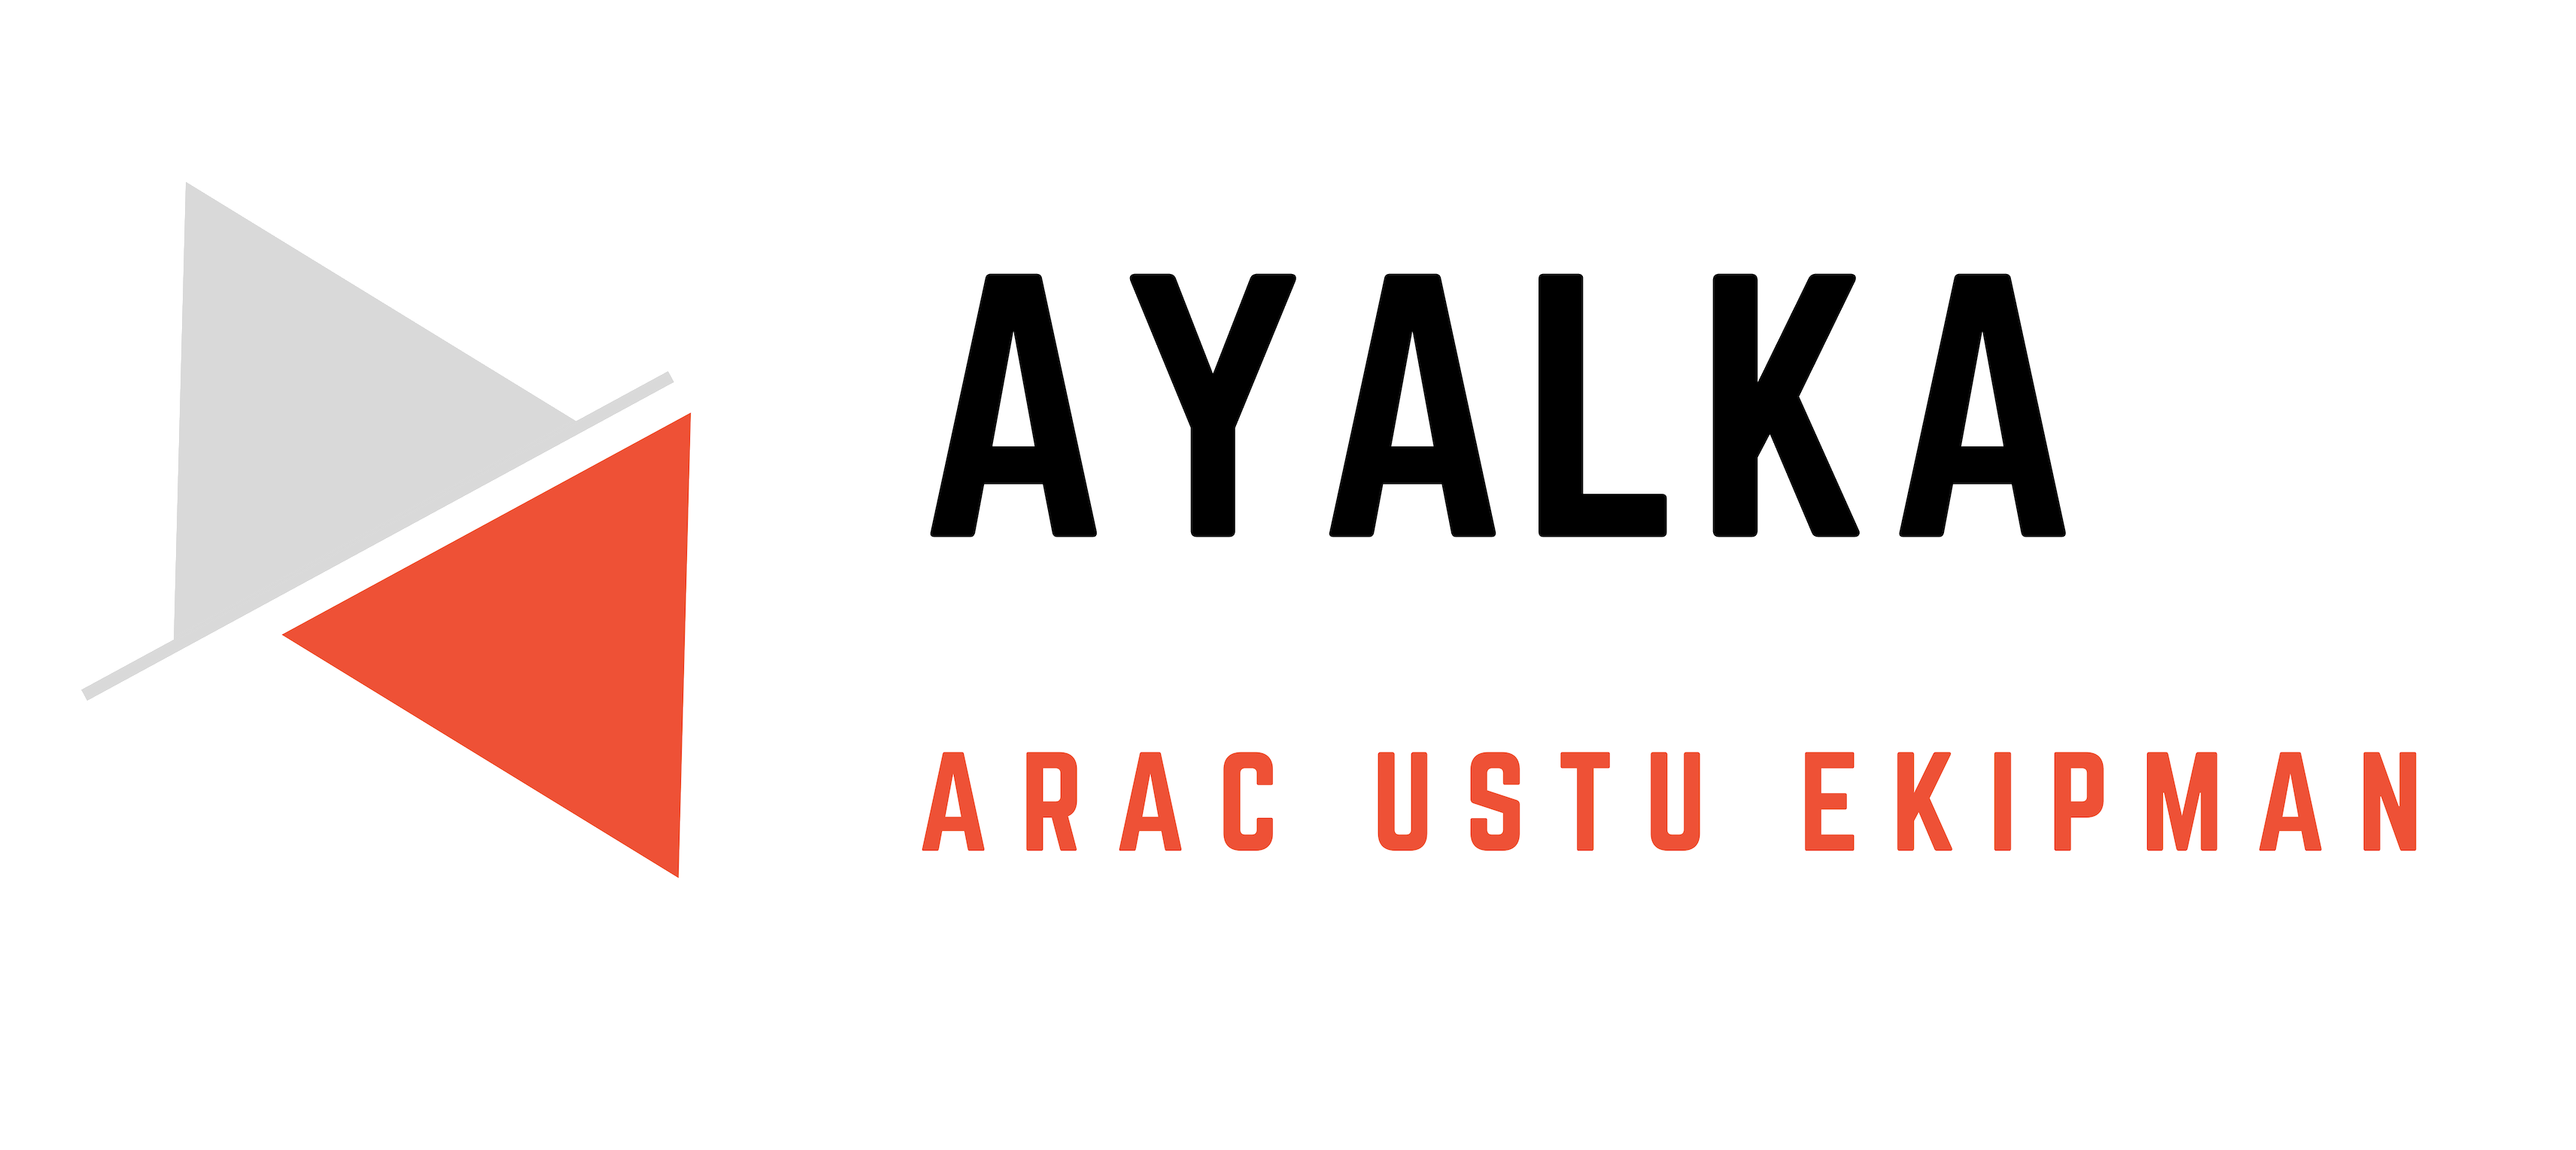 Ayalka